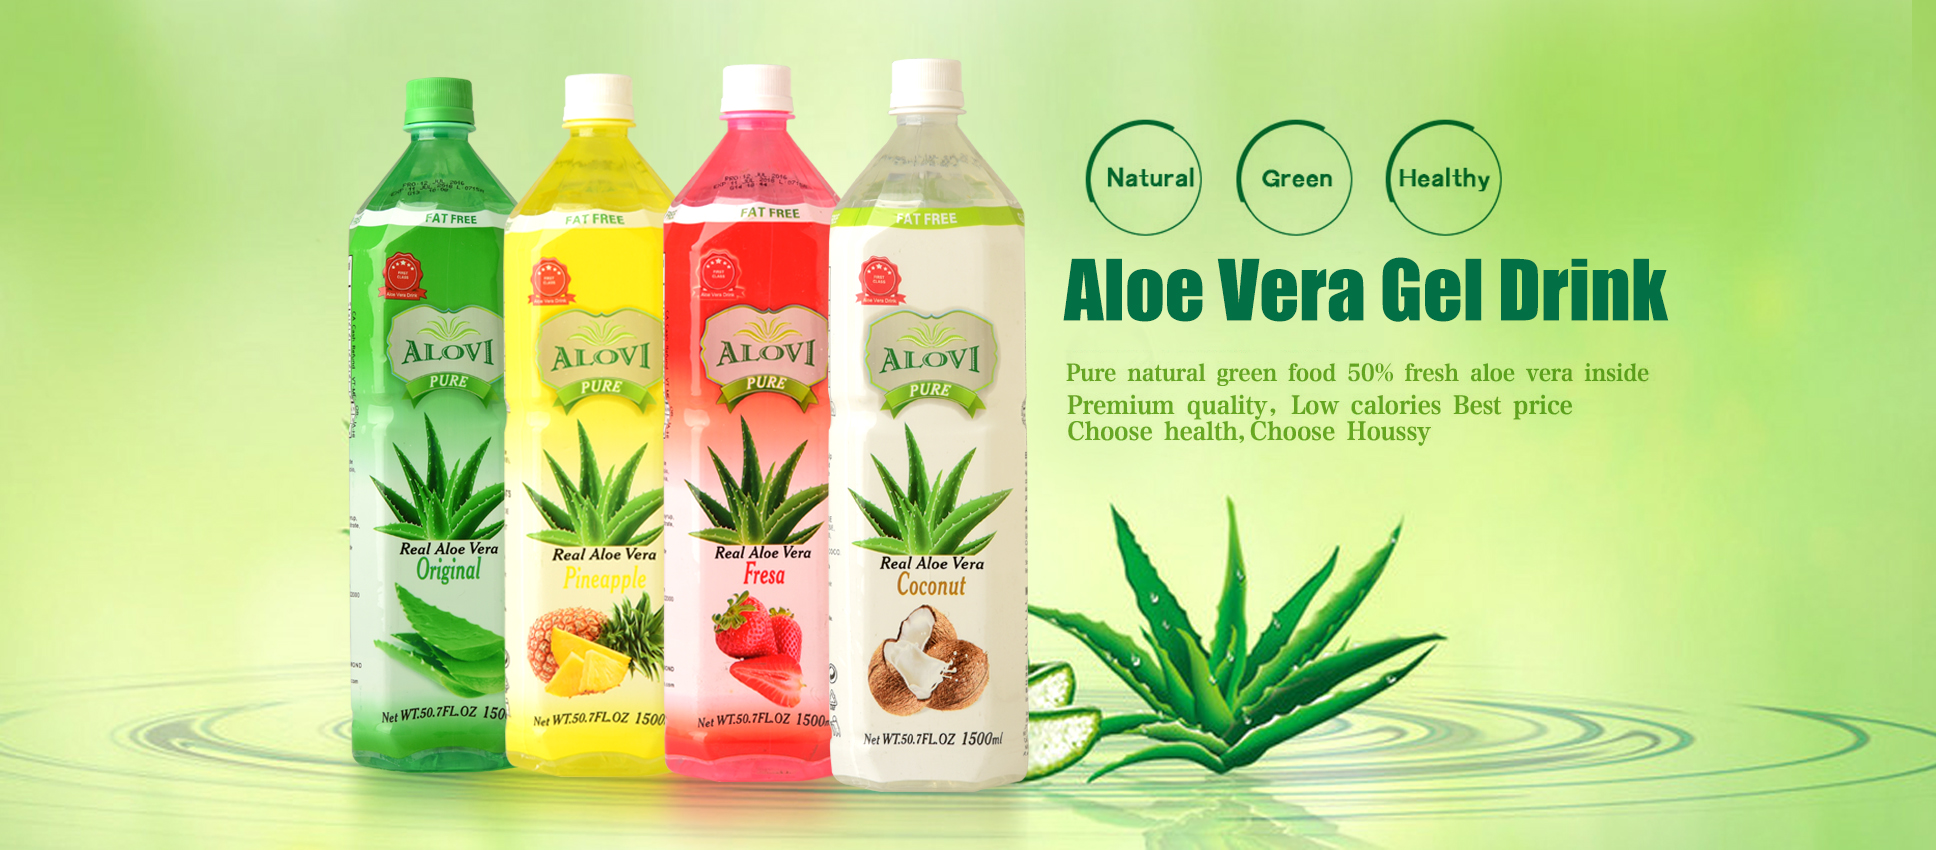 http://www.okyalo.com/aloe-vera-gel-drink.html